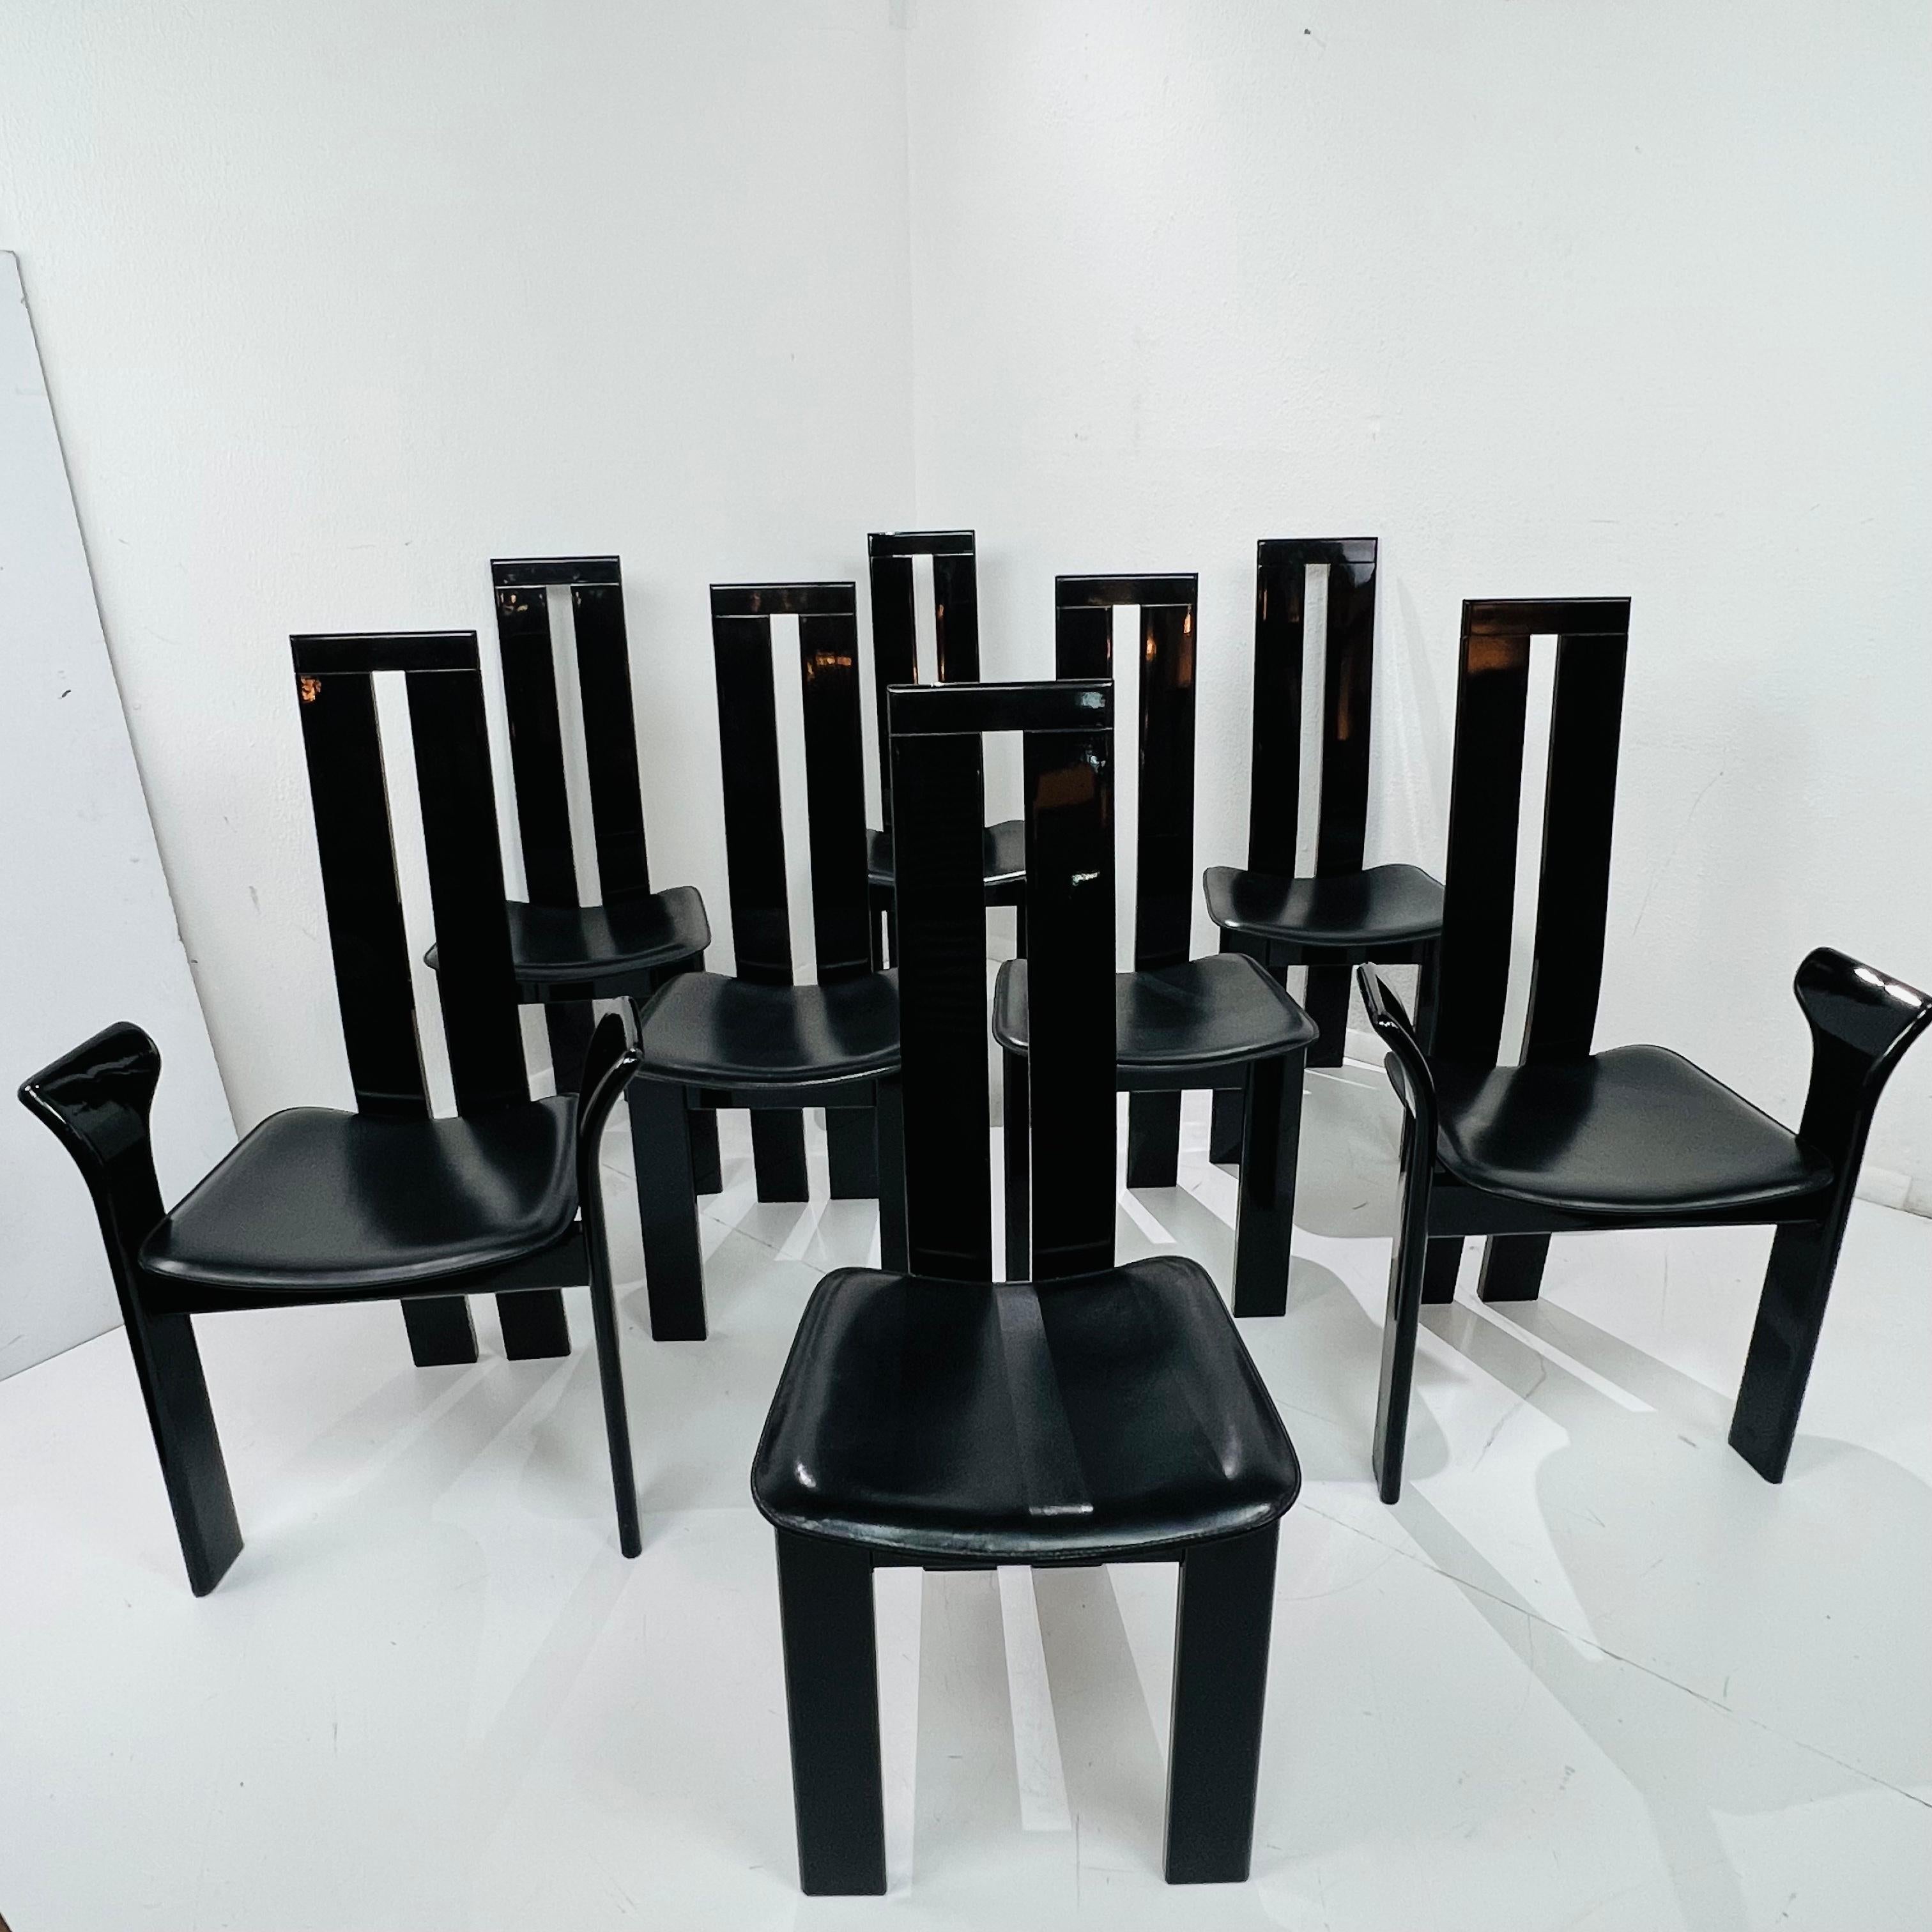 Schicker Satz postmoderner Esszimmerstühle, entworfen von Pietro Costantini in San Vito al Torre, Italien. Die ikonischen Stühle zeichnen sich durch skulpturale, schwarz lackierte Gestelle mit anschmiegsamen Sitzpolstern aus schwarzem Leder aus. Das